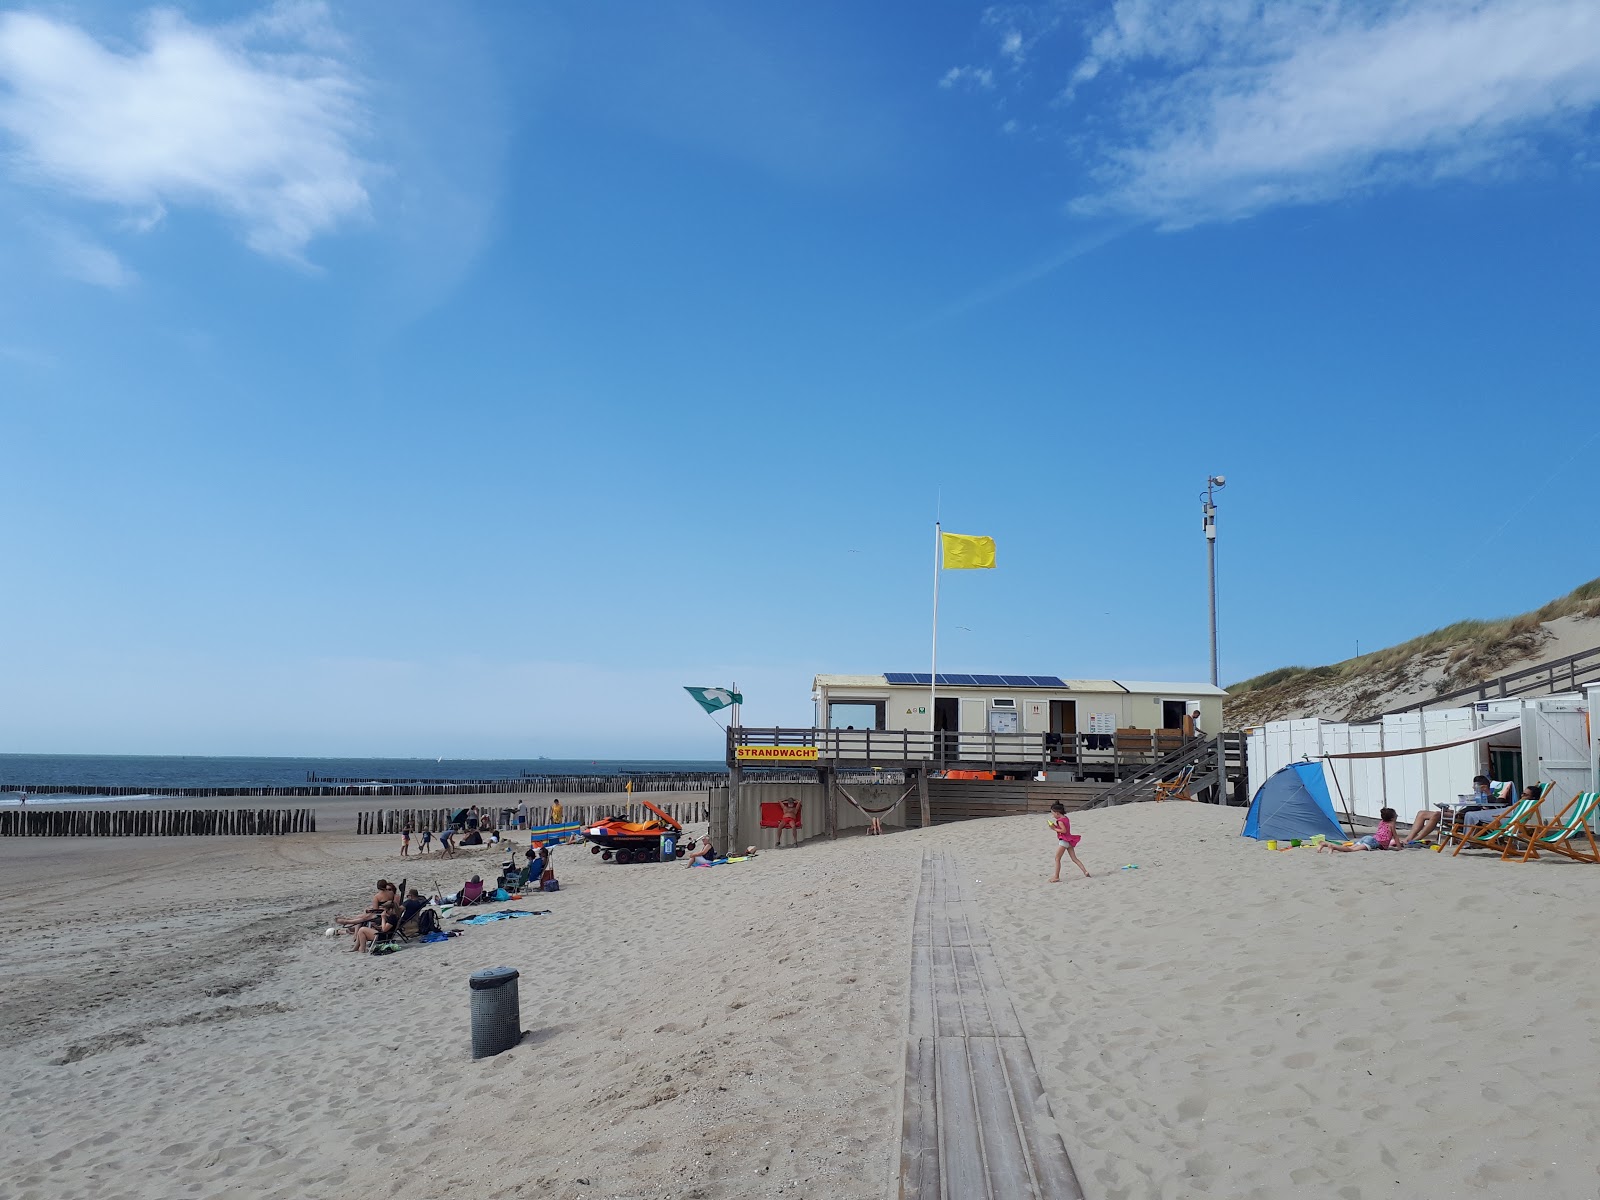 Foto de Joossesweg beach - lugar popular entre os apreciadores de relaxamento